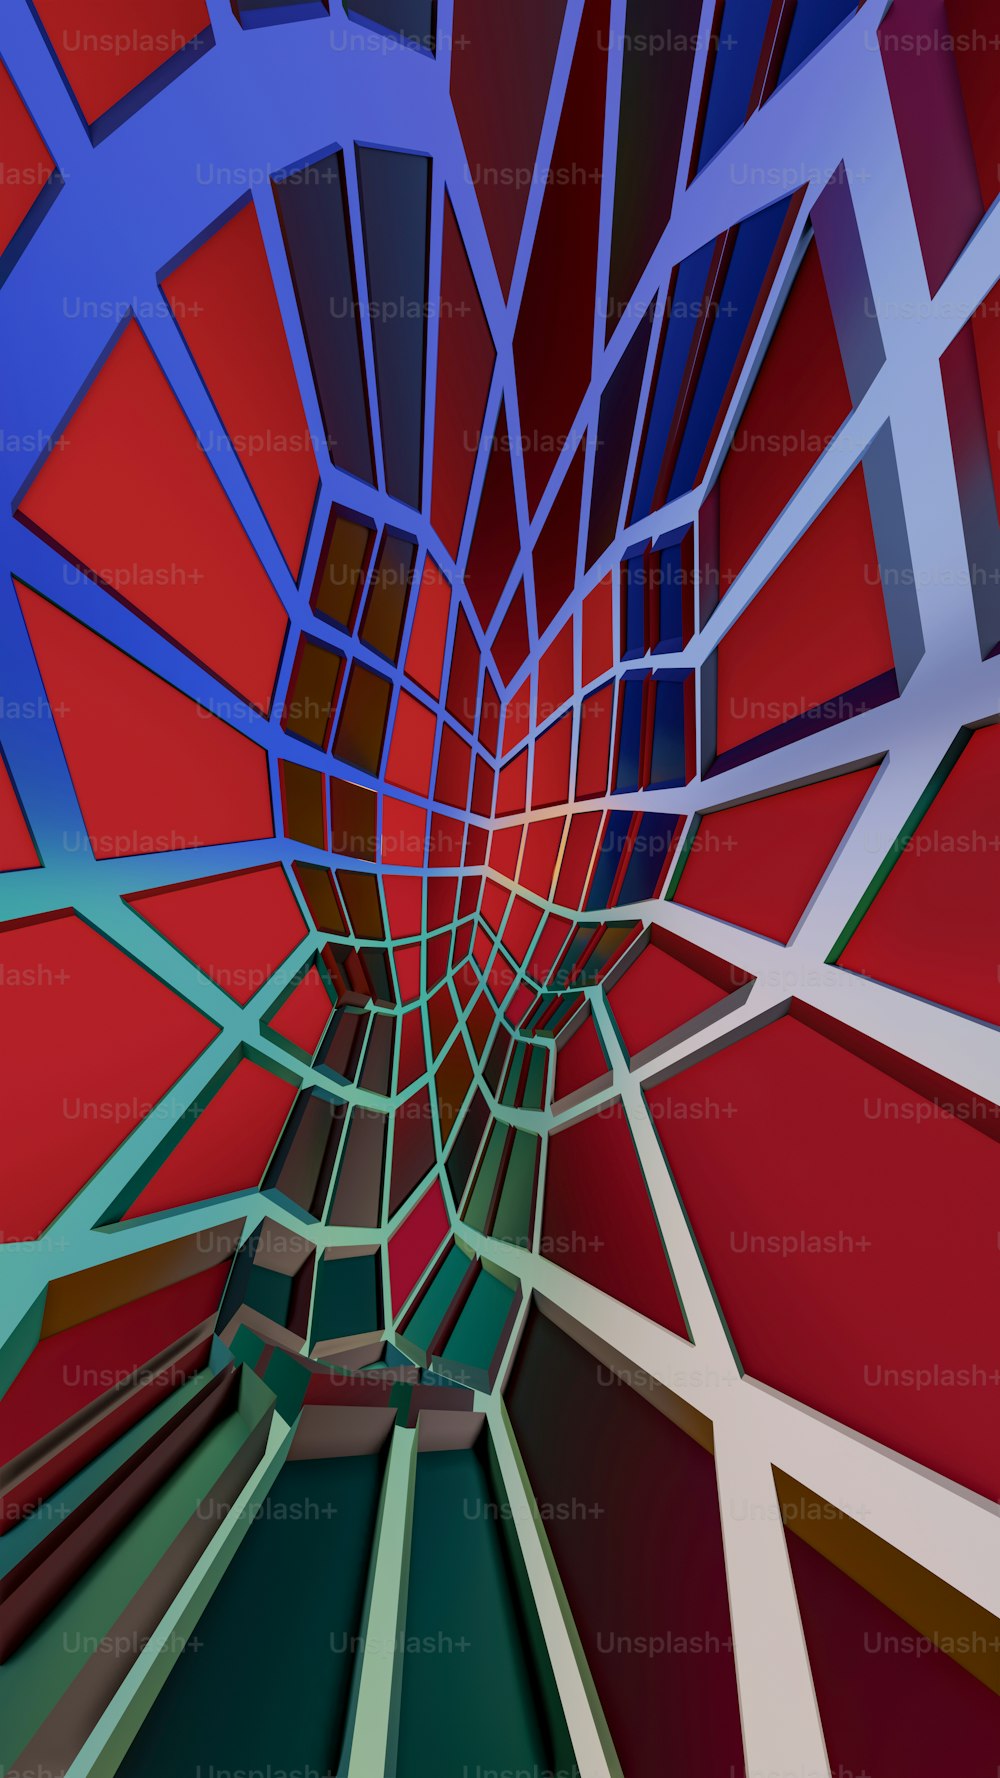 Ein abstraktes Bild einer roten und blauen Struktur